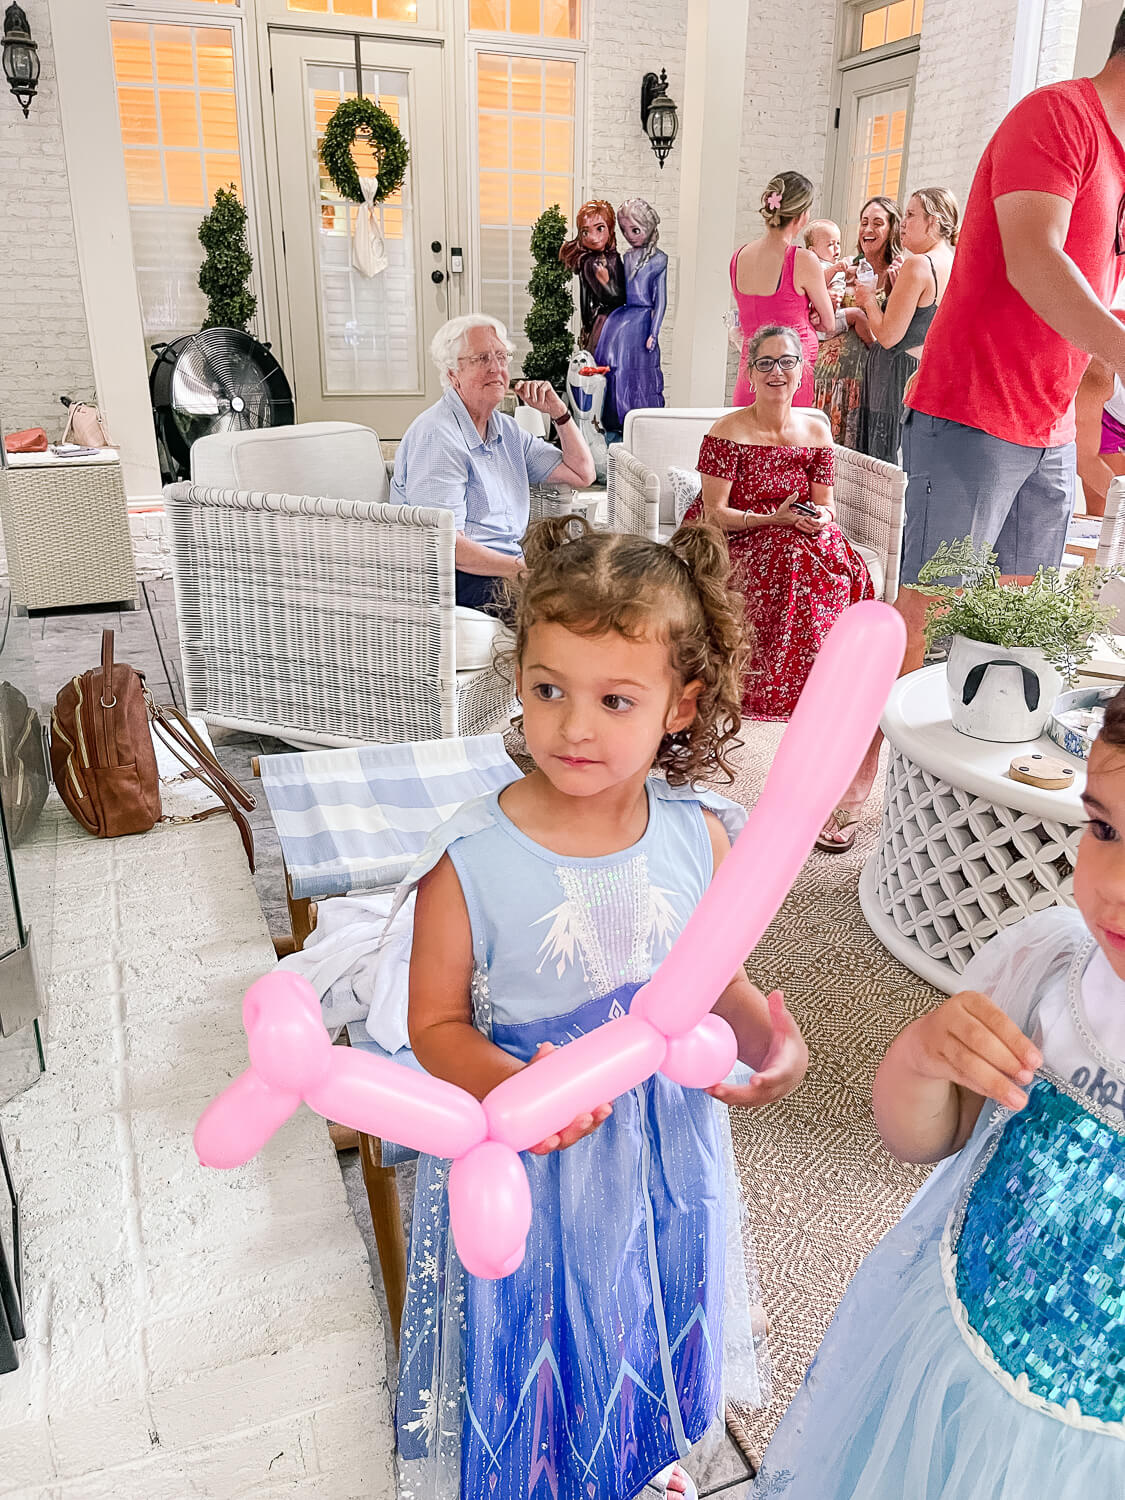 2 little girls holding balloon animals